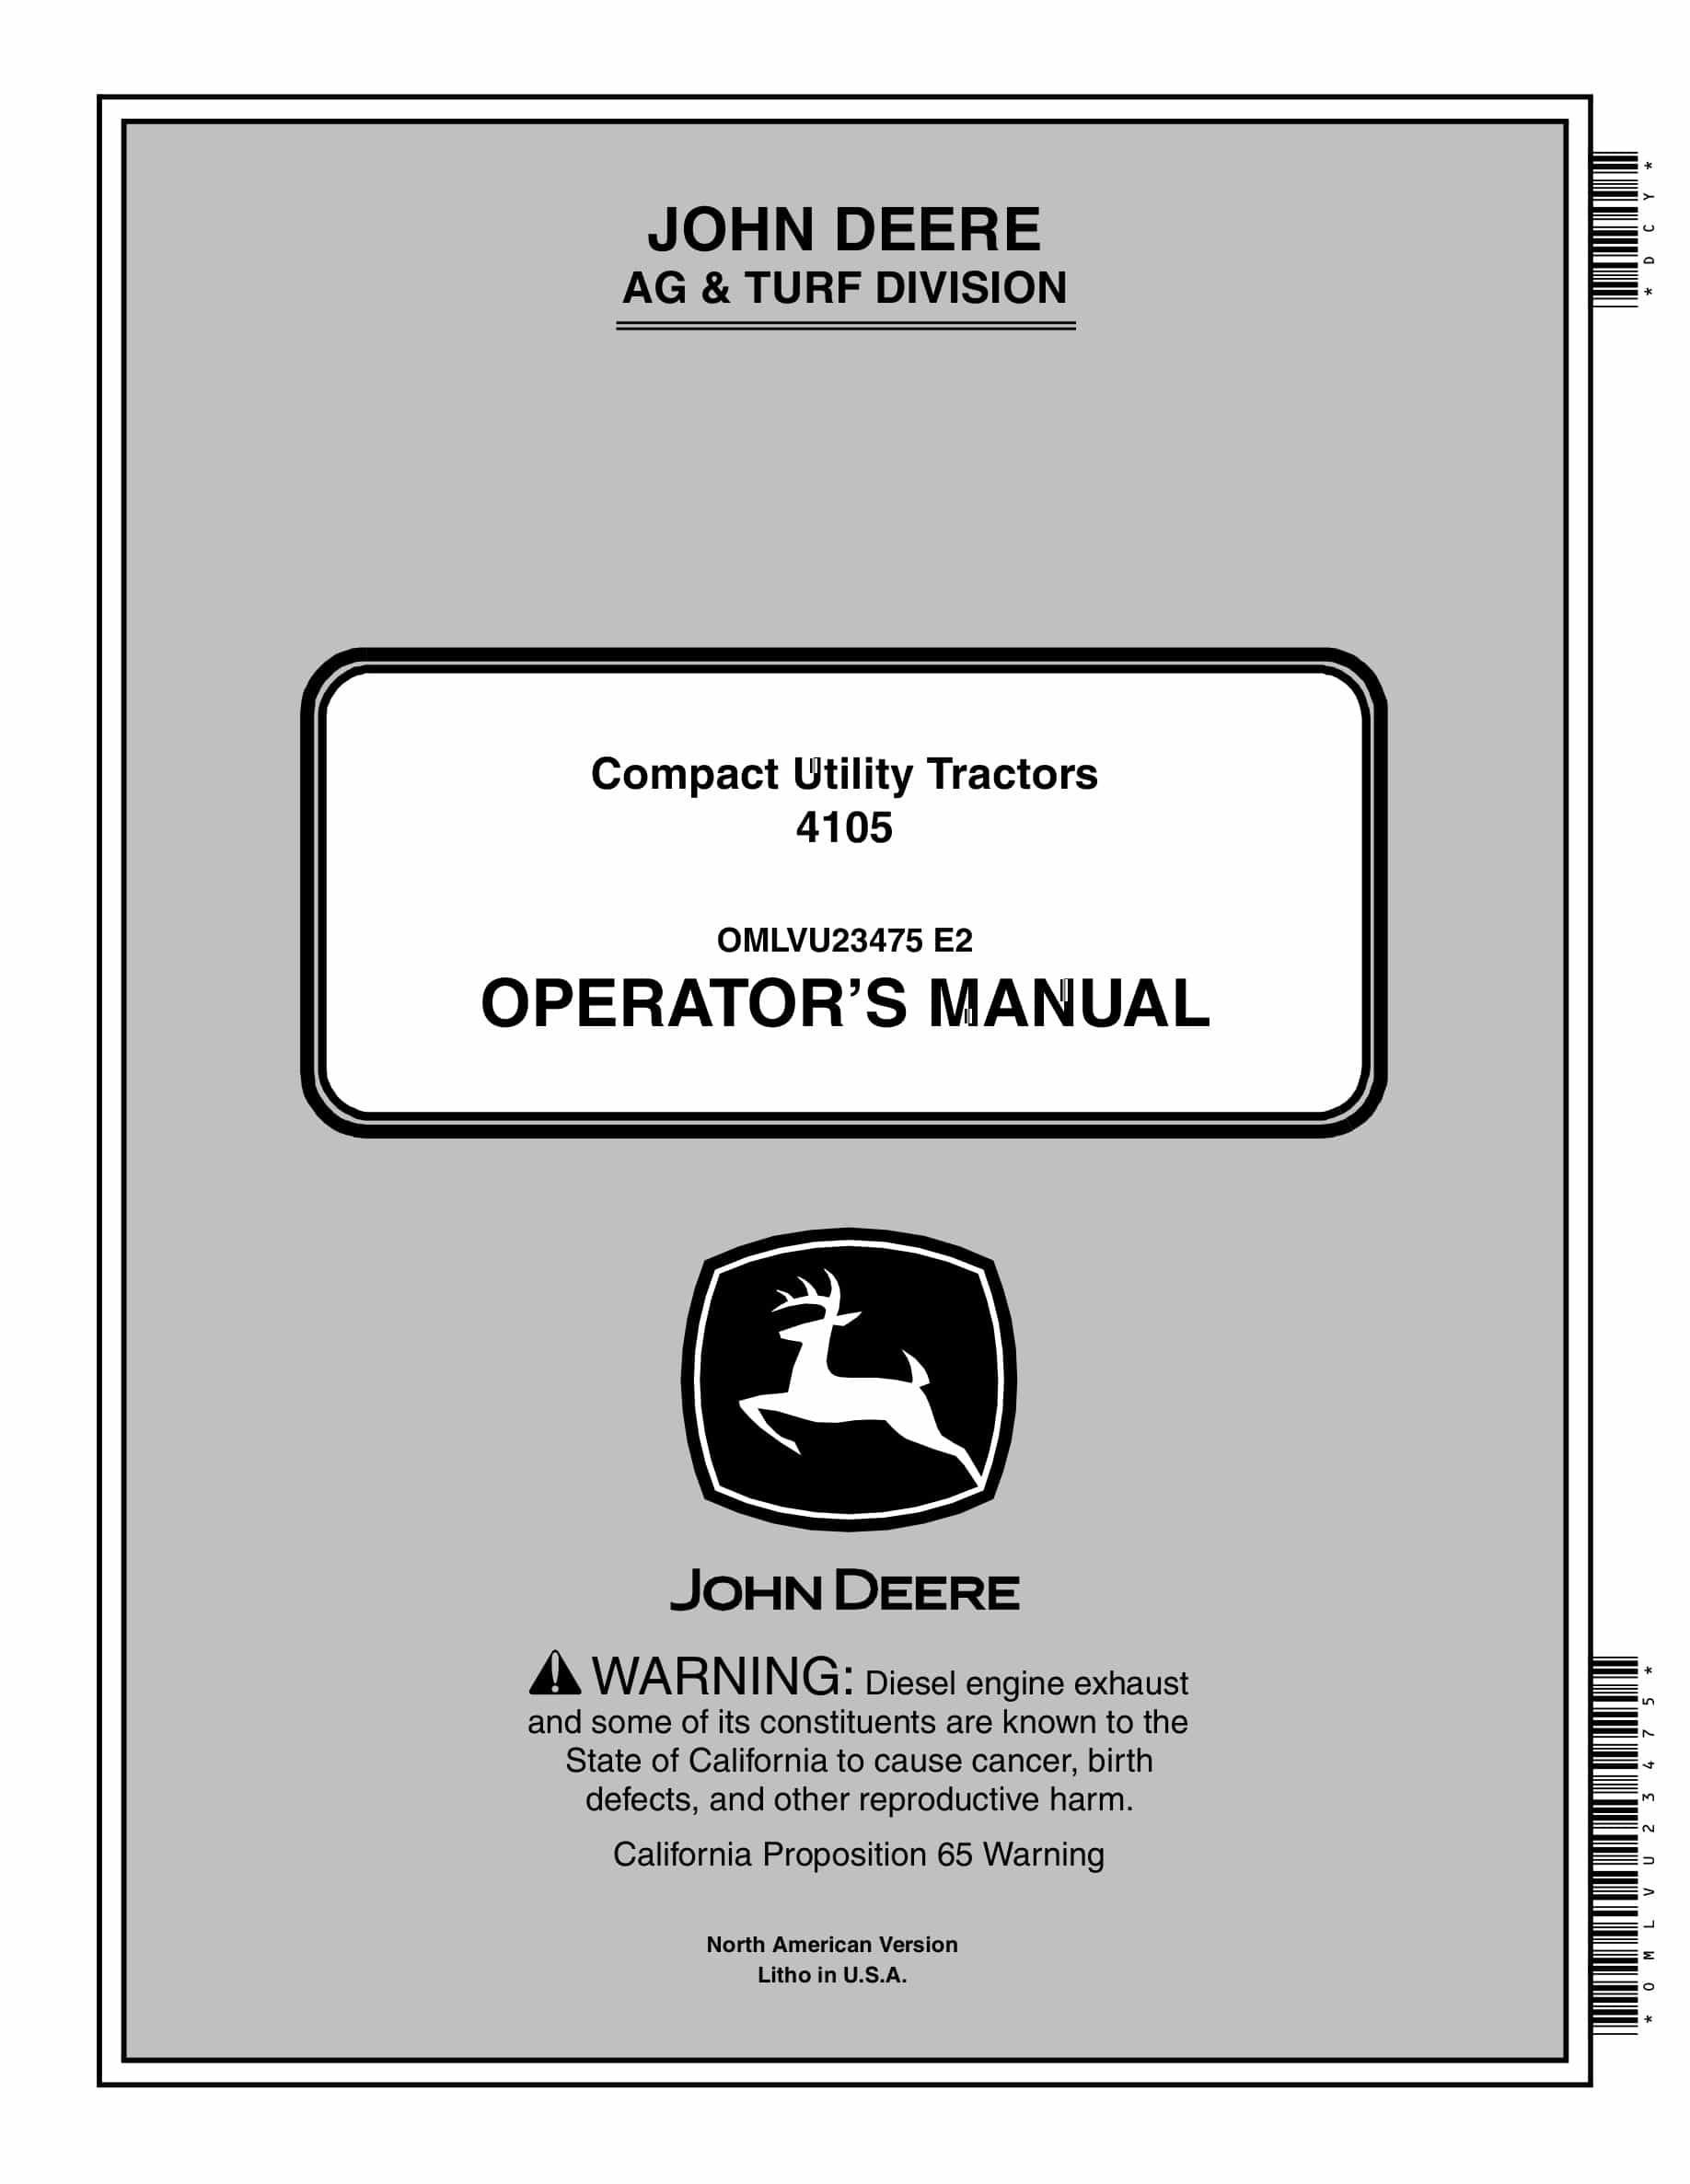 John Deere 4105 Tractor Operator Manual OMLVU23475-1